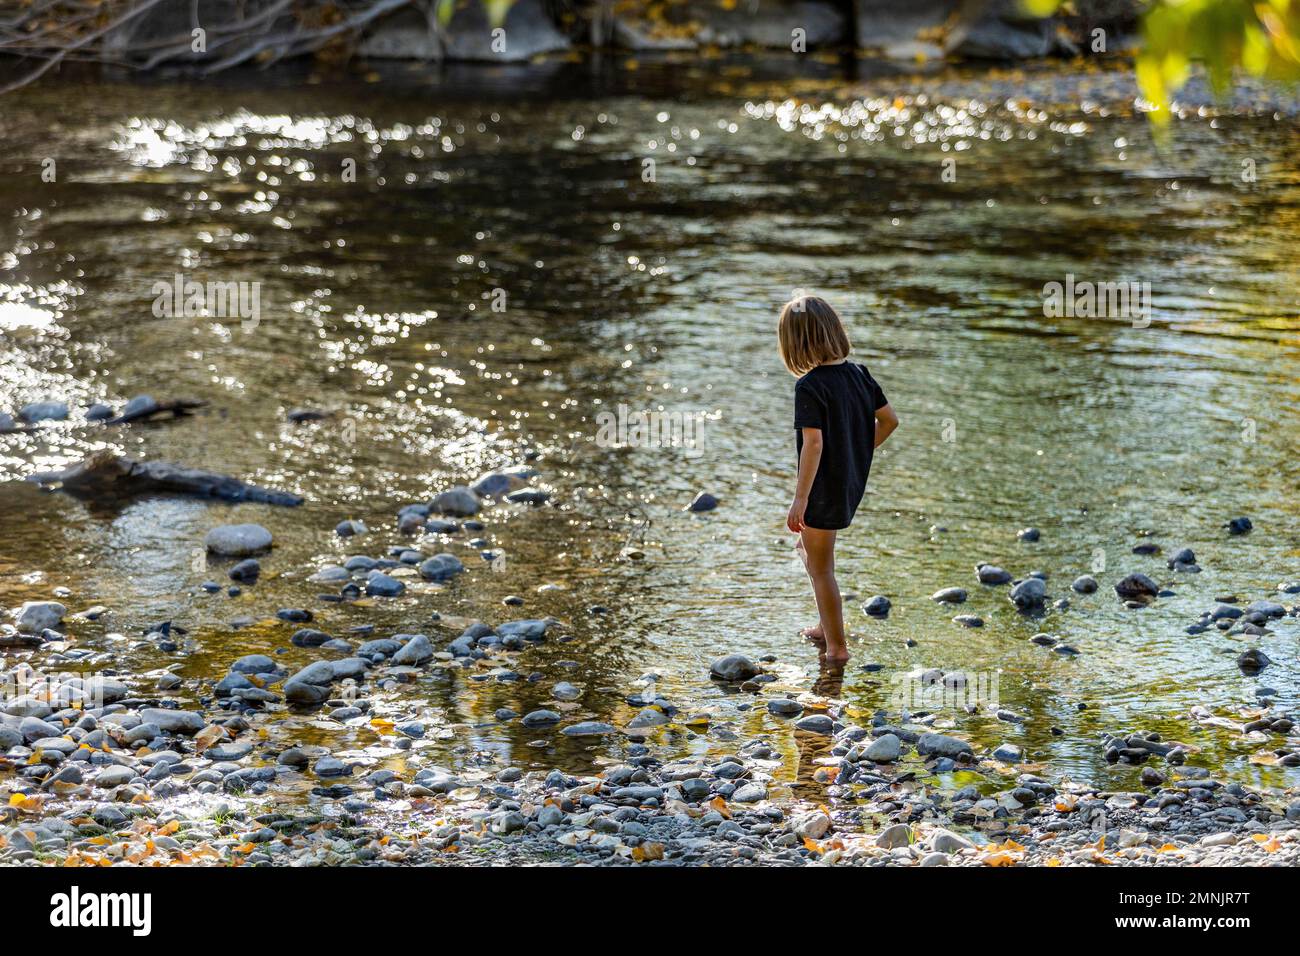 États-Unis, Idaho, Bellevue, Girl (6-7) exploration des échalotes de rivière en été Banque D'Images